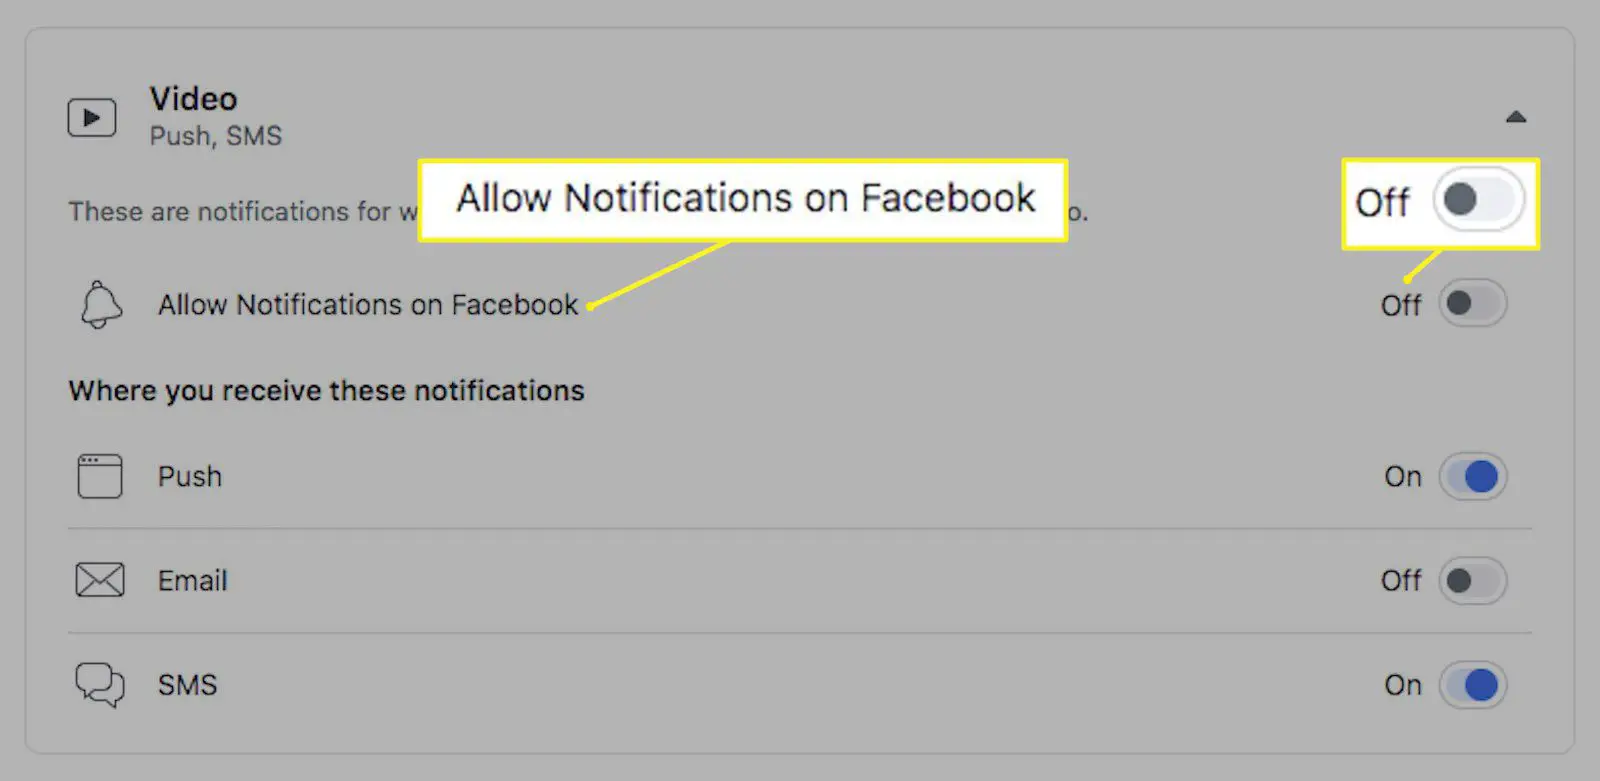 Configurações de notificação de vídeo para Facebook